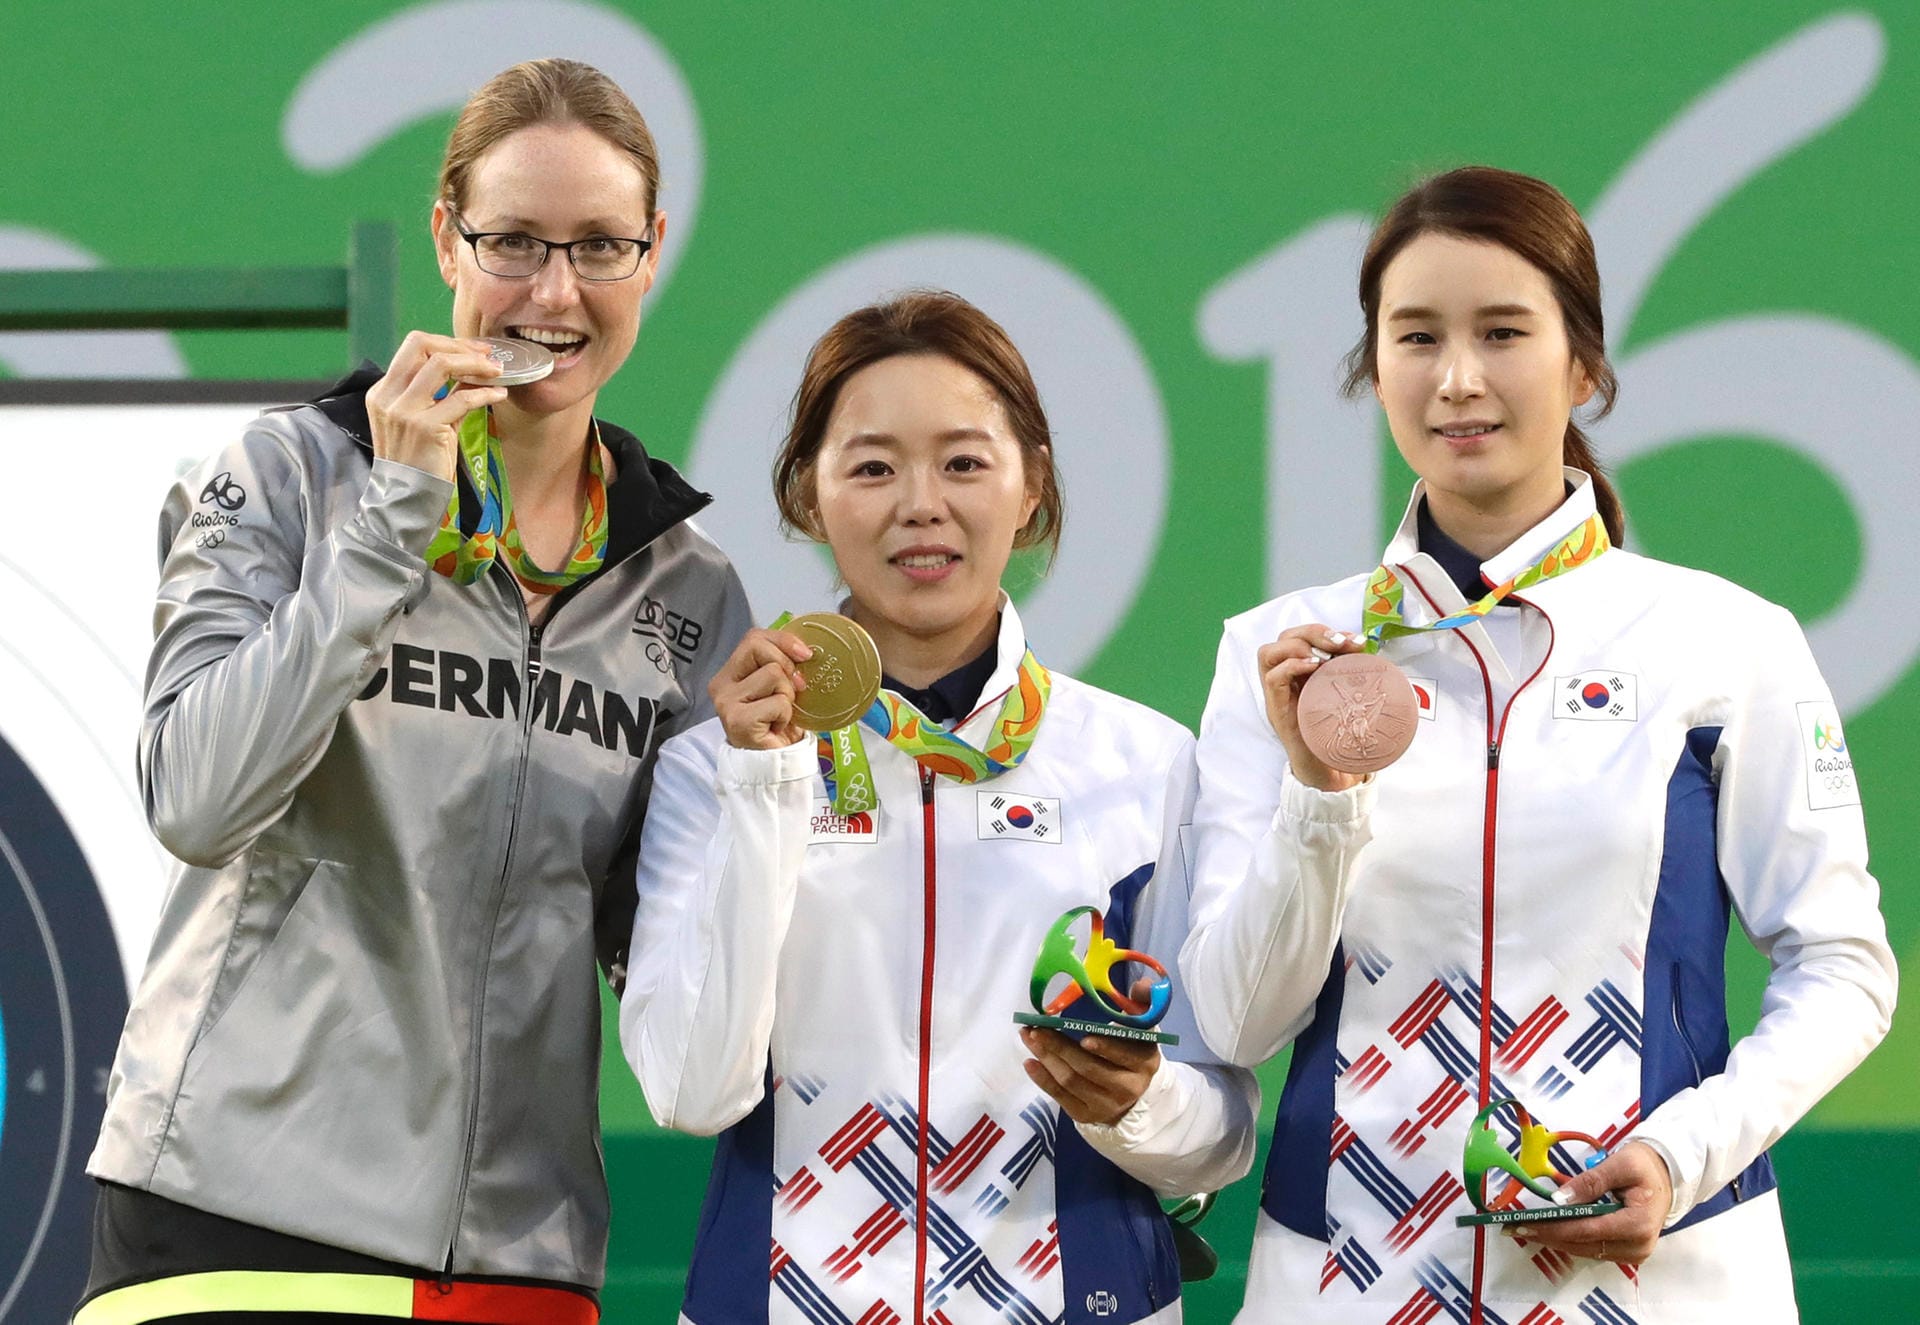 Bogenschützin Lisa Unruh (li.) schreibt mit ihrer Silbermedaille deutsche Olympia-Geschichte. Mit der ersten Einzelmedaille in dieser Disziplin krönt die Berlinerin ihre noch junge Karriere. Nun hofft sie auf einen Schub für ihre Sportart.